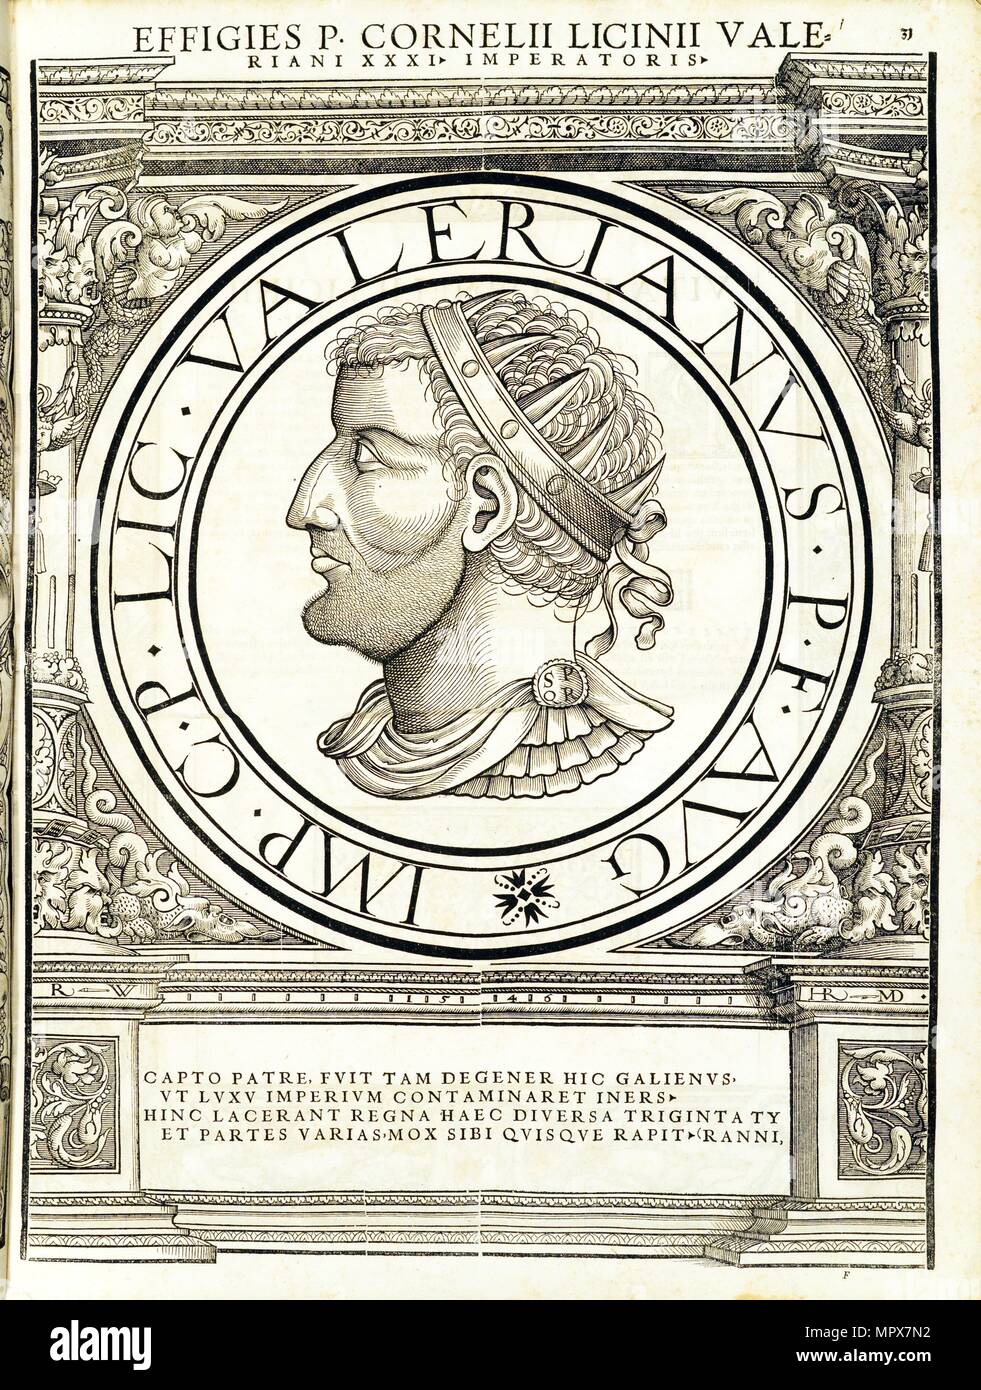 Licinius Valerianus', 1559. Banque D'Images